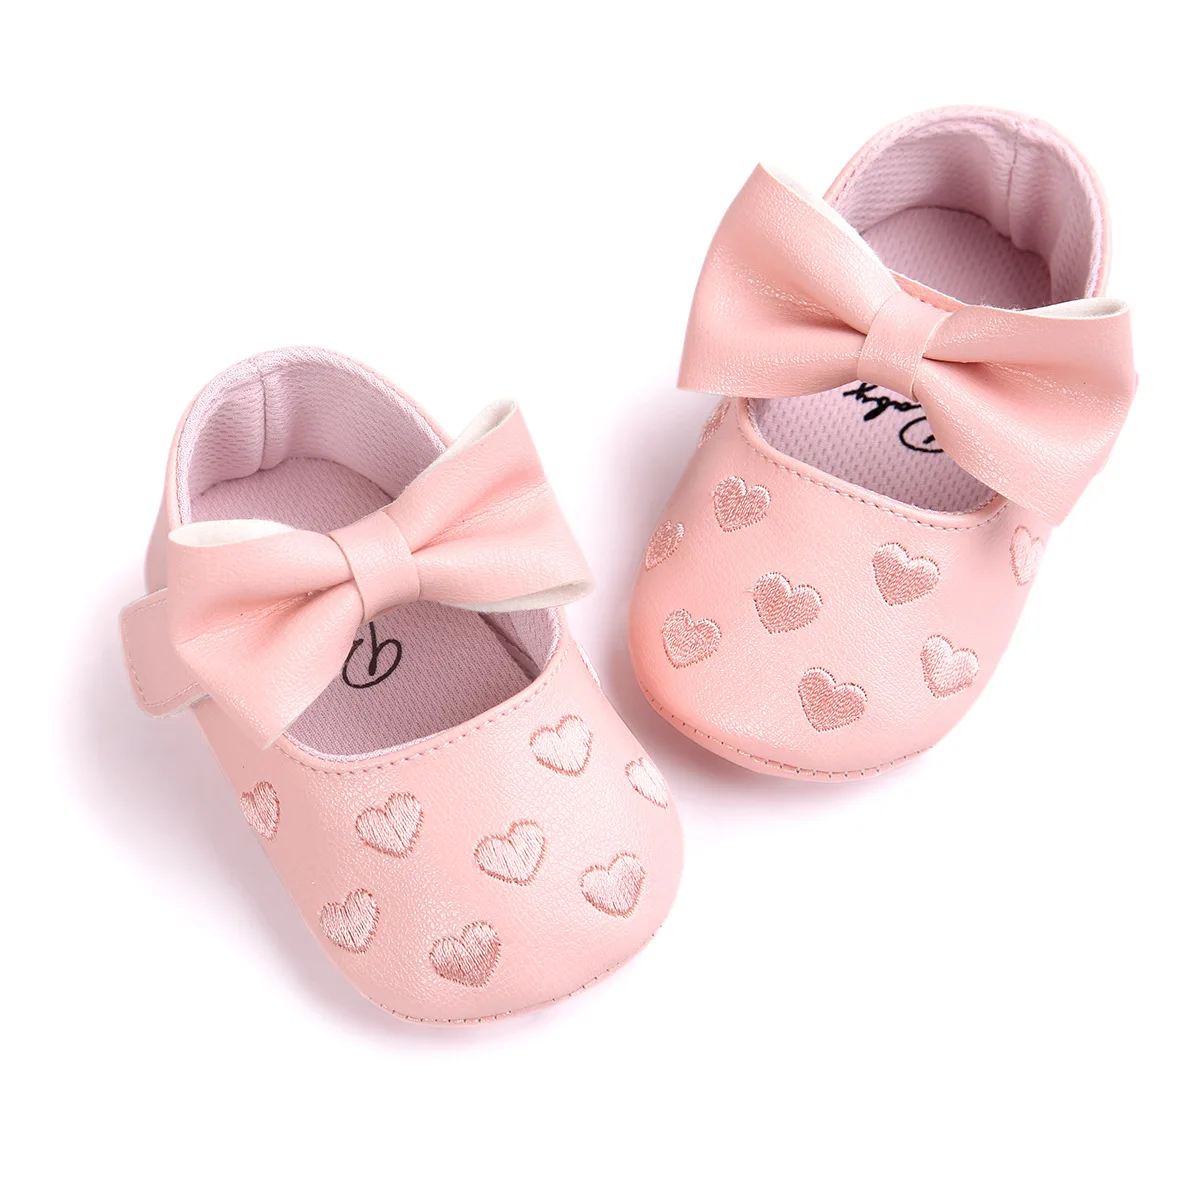 2019 милые Мокасины Mary Jane золотого и белого цвета для детей 0-18 месяцев, детская обувь с мягкой подошвой, обувь для малышей с бантом-бабочкой